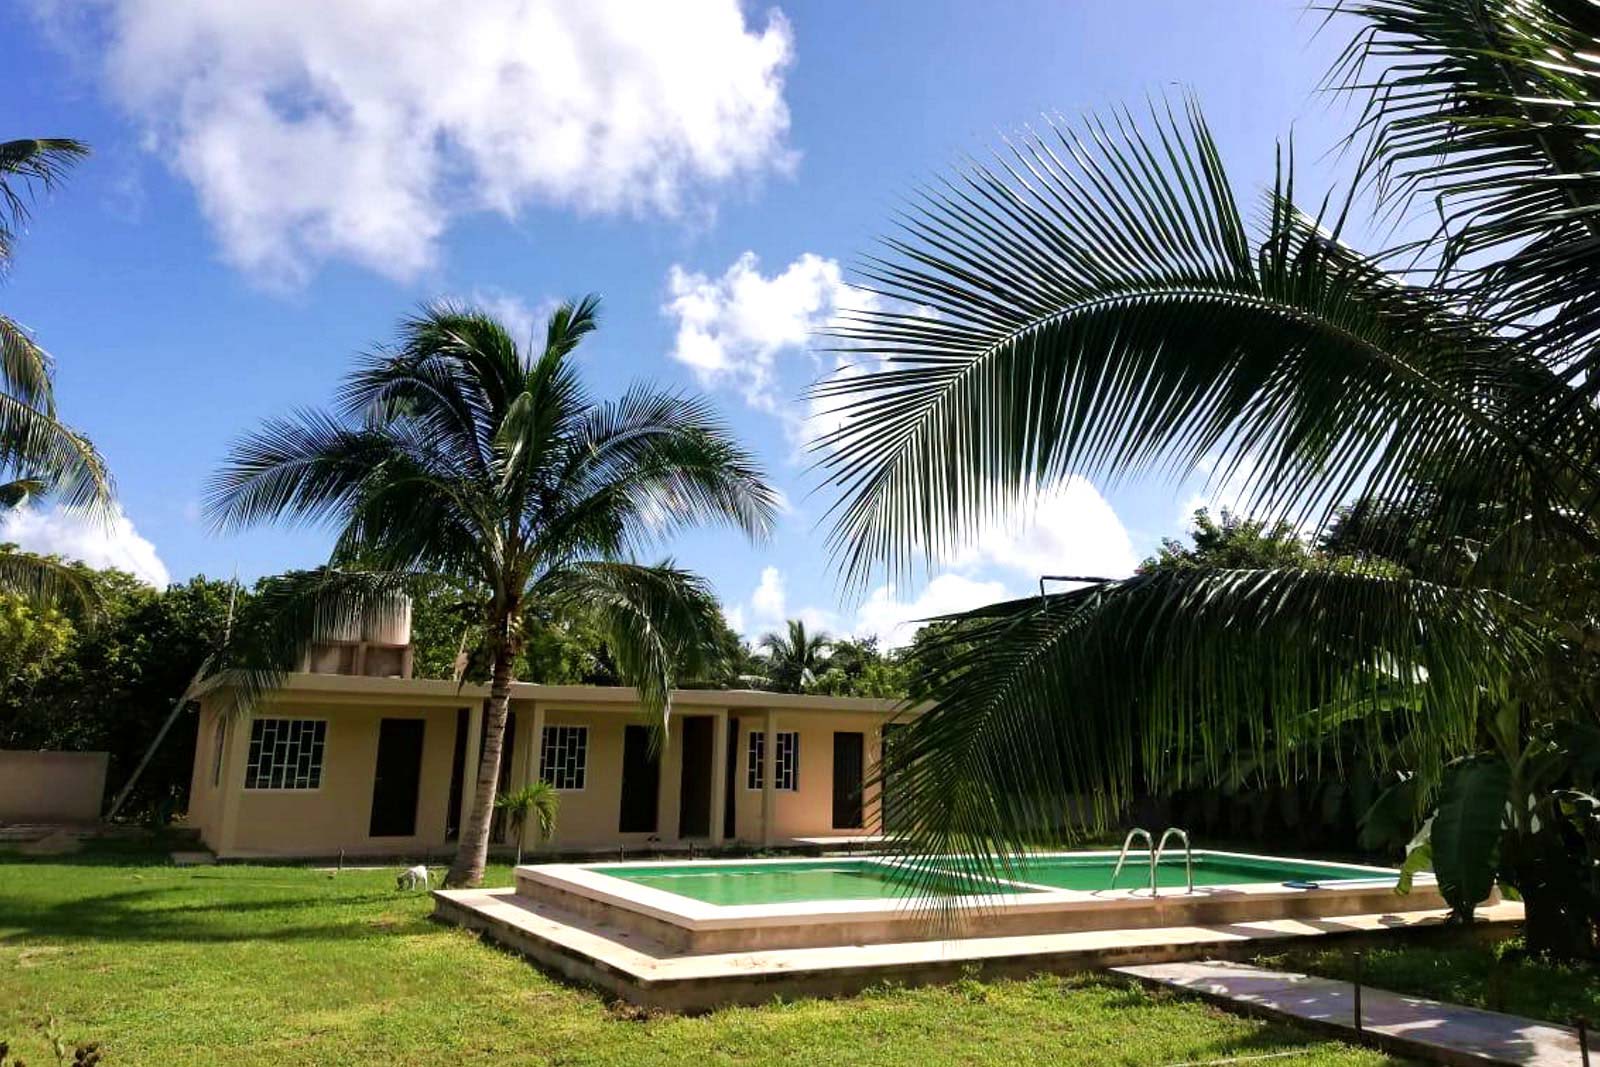 La mejor alternativa de hospedaje en Bacalar, Quintana Roo, Balnearios Mexico